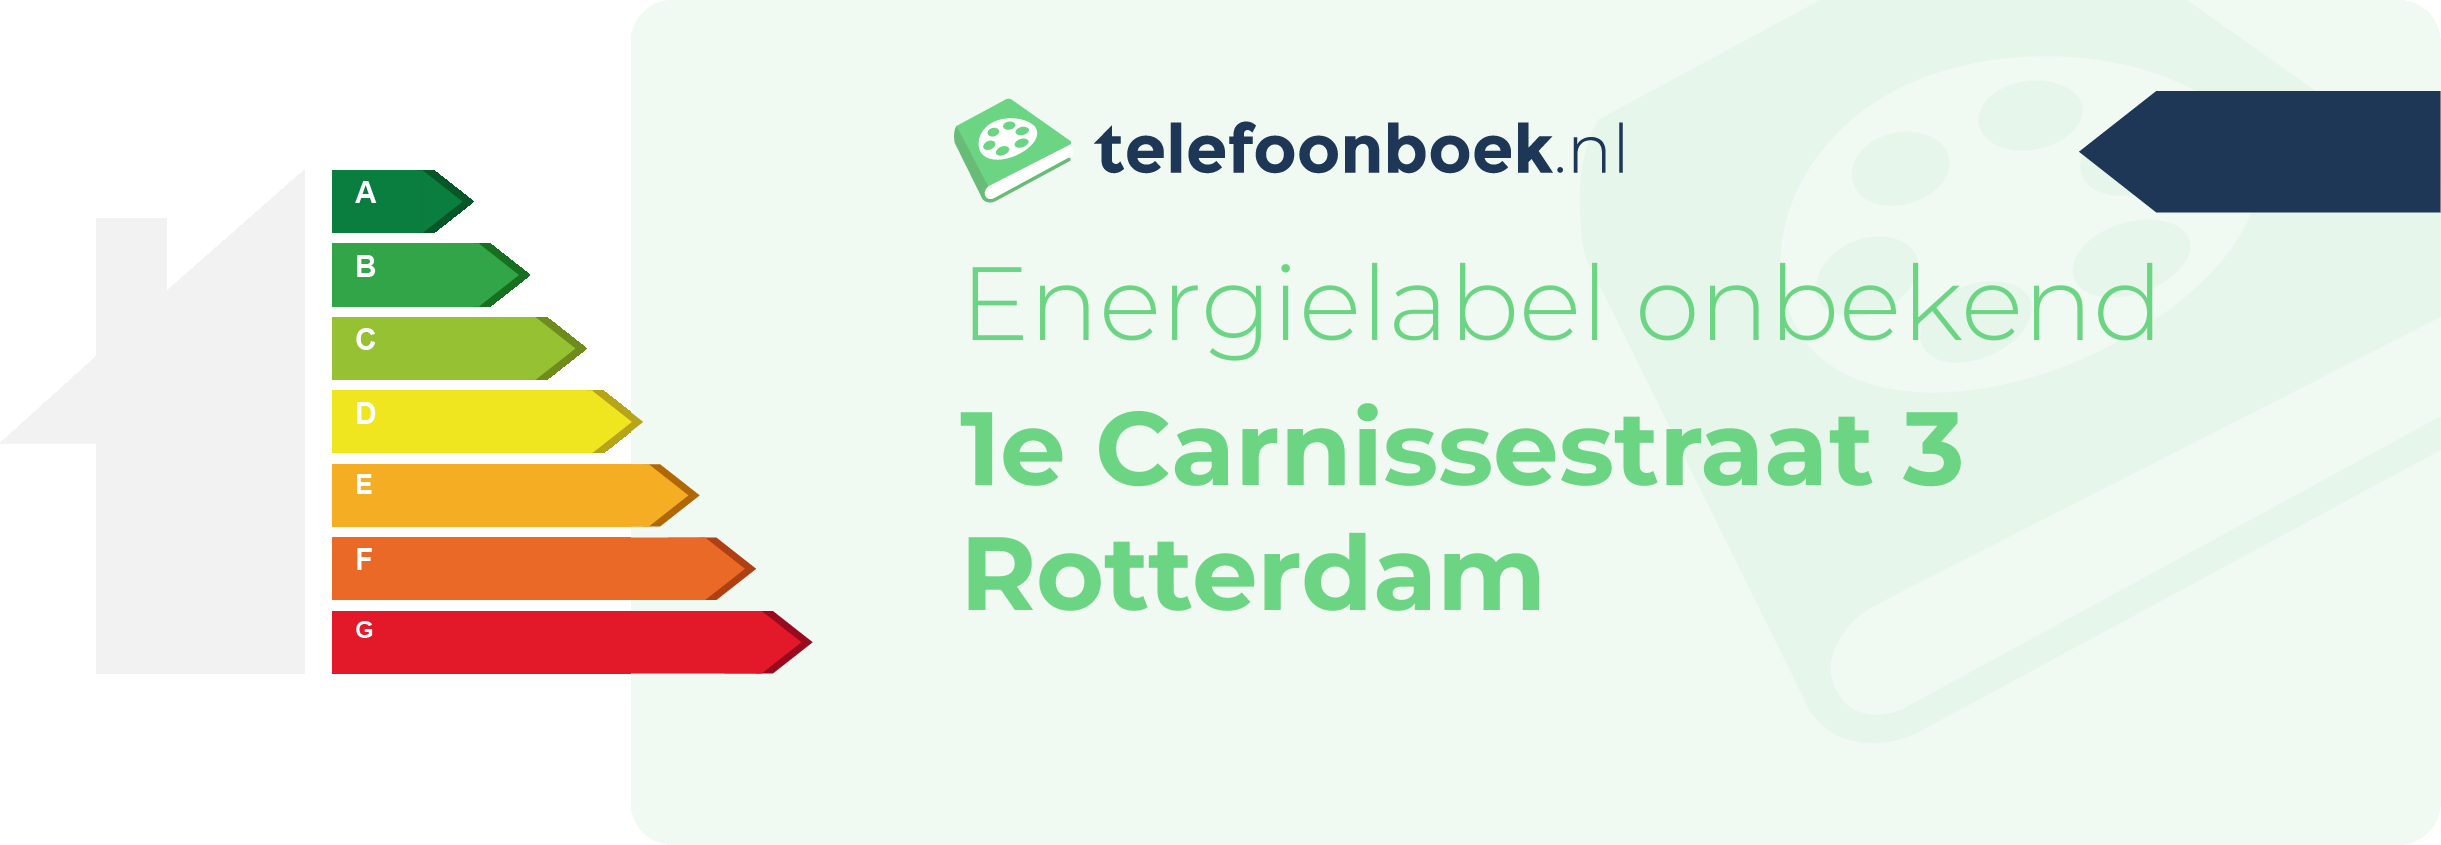 Energielabel 1e Carnissestraat 3 Rotterdam